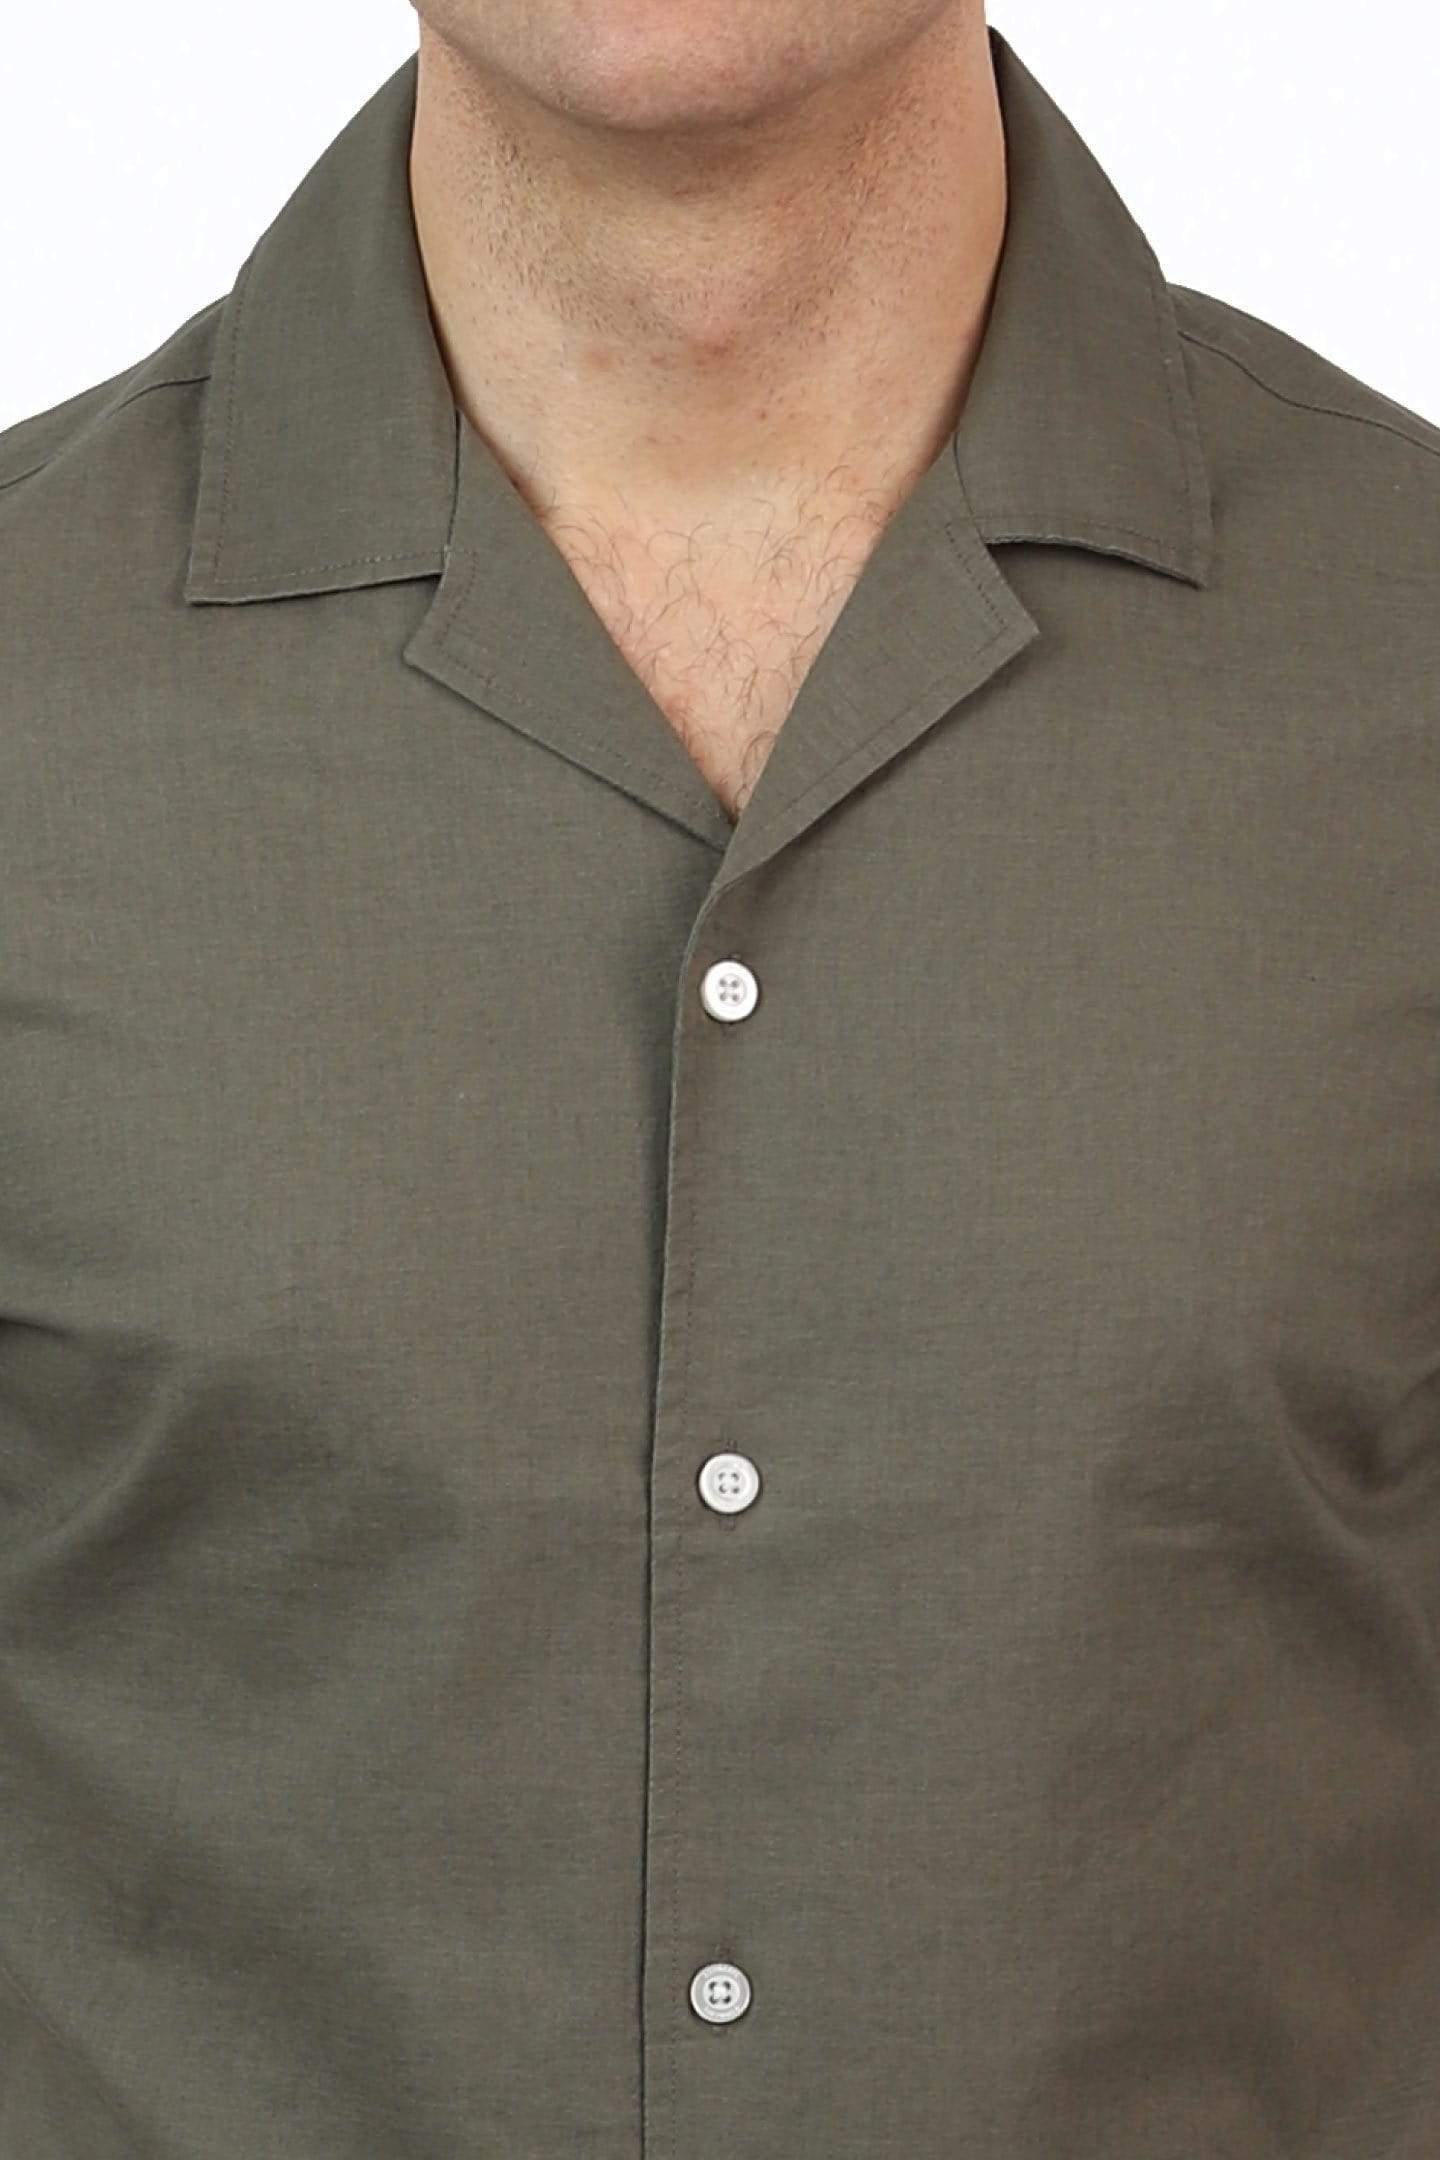 Ash & Erie Canopy Green Open Collar Shirt for Short Men | Ash & Erie